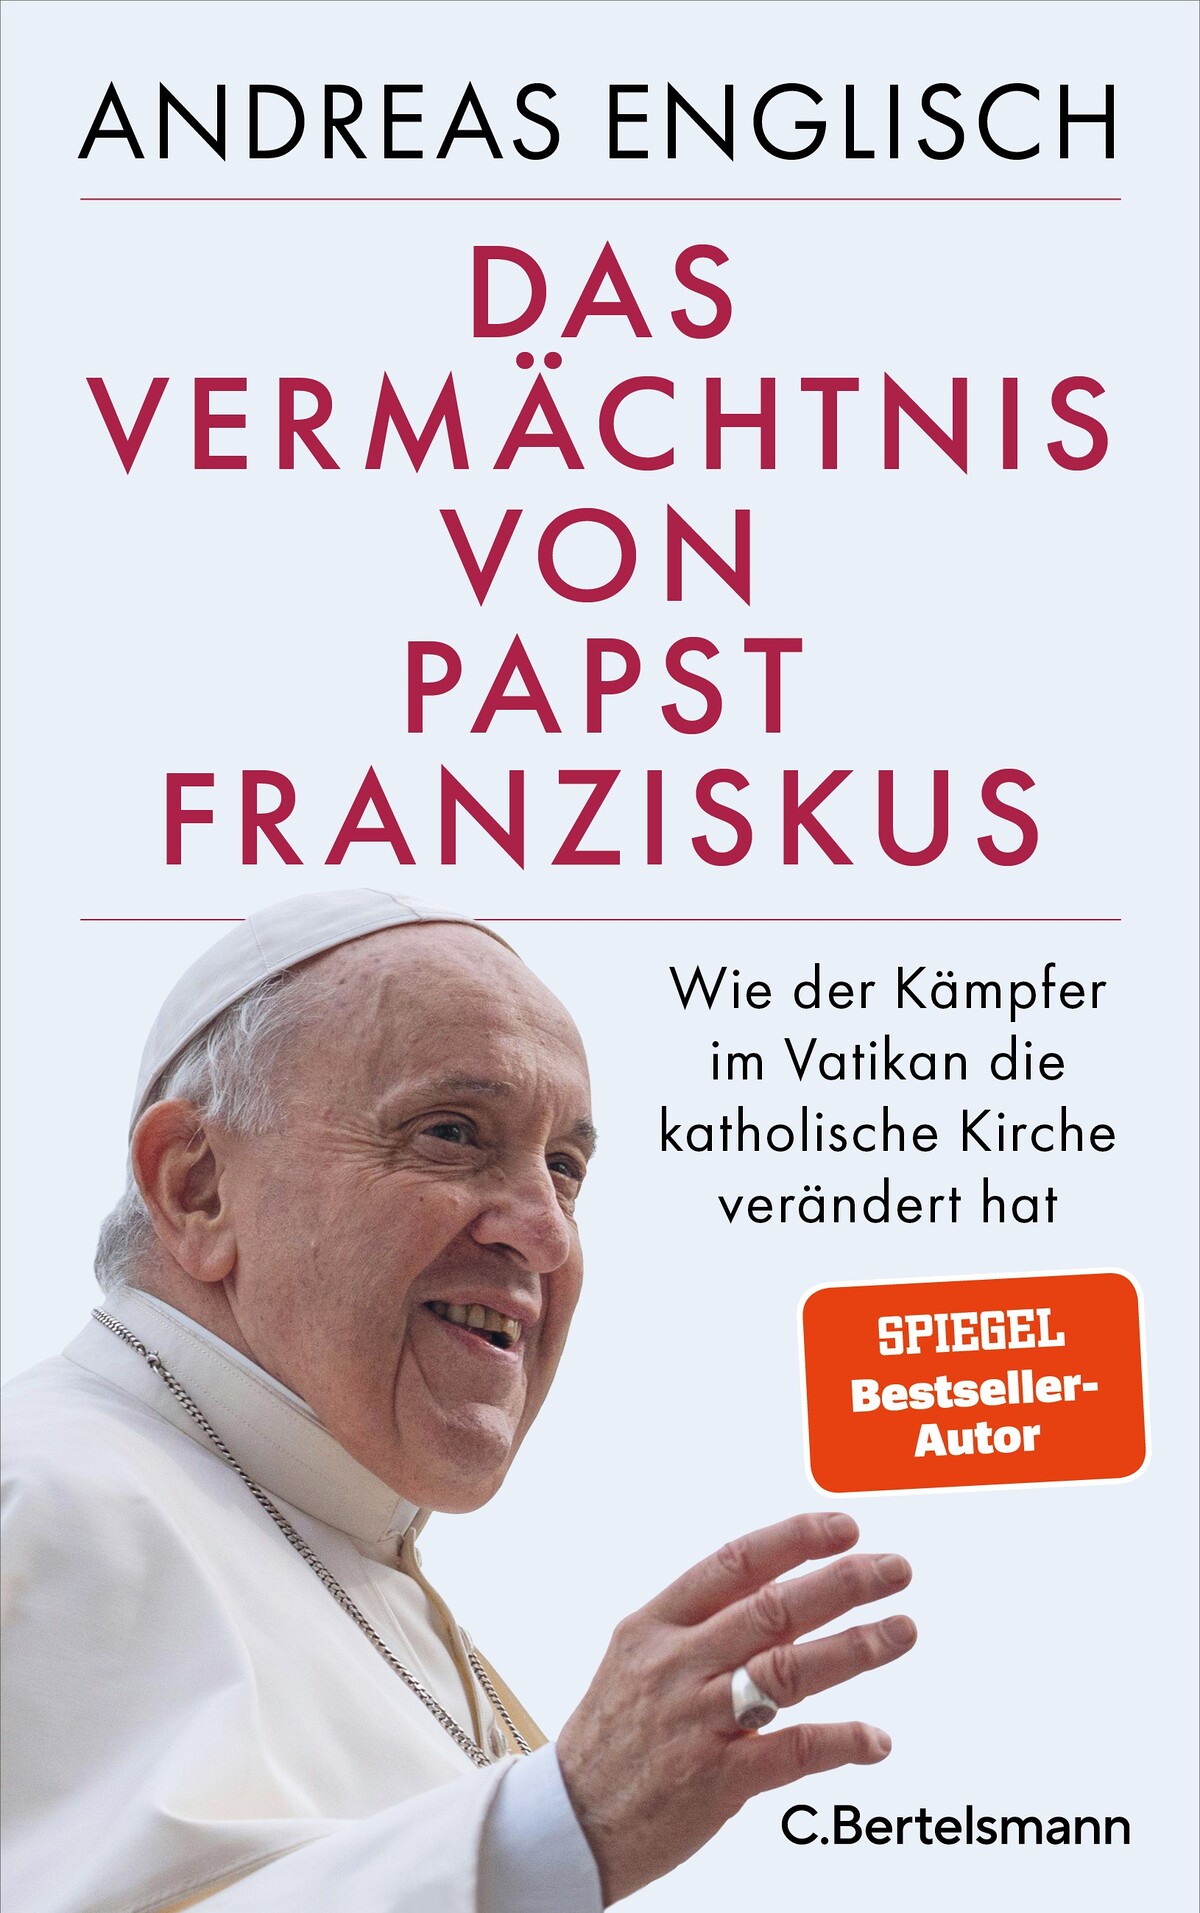 Das Vermaechtnis von Papst Franziskus von Andreas Englisch